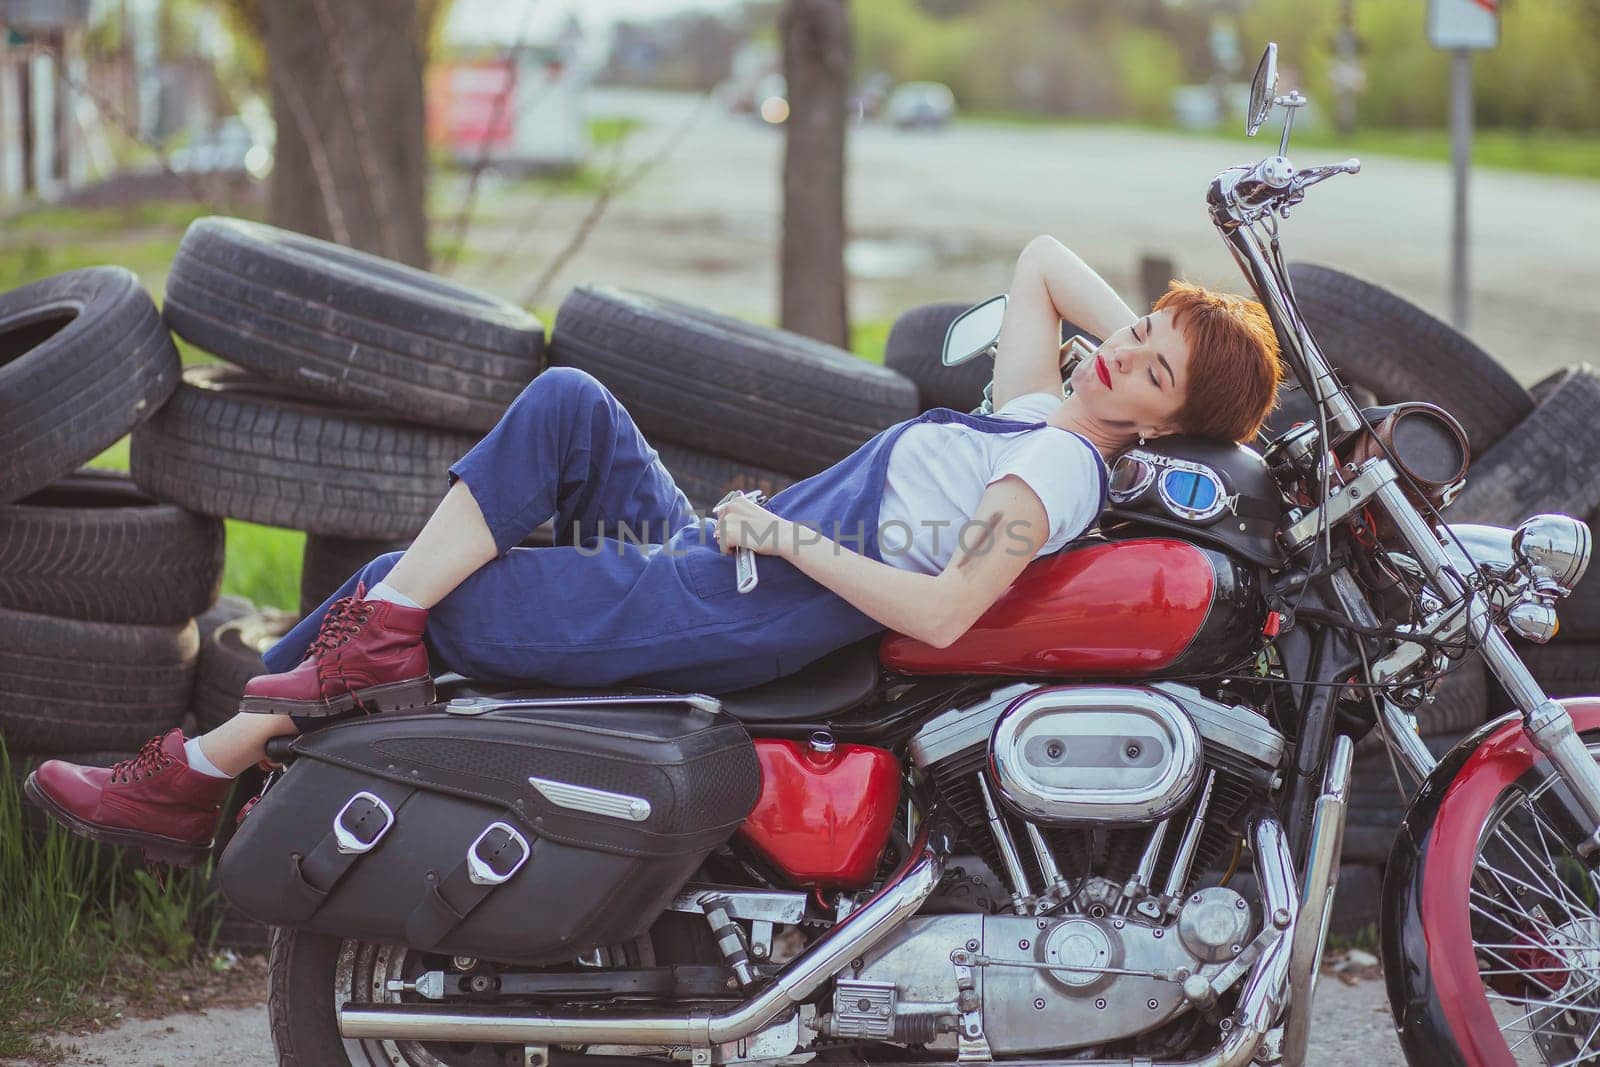 Beautiful girl mechanic on a motorcycle in a roadside workshop by Viktor_Osypenko